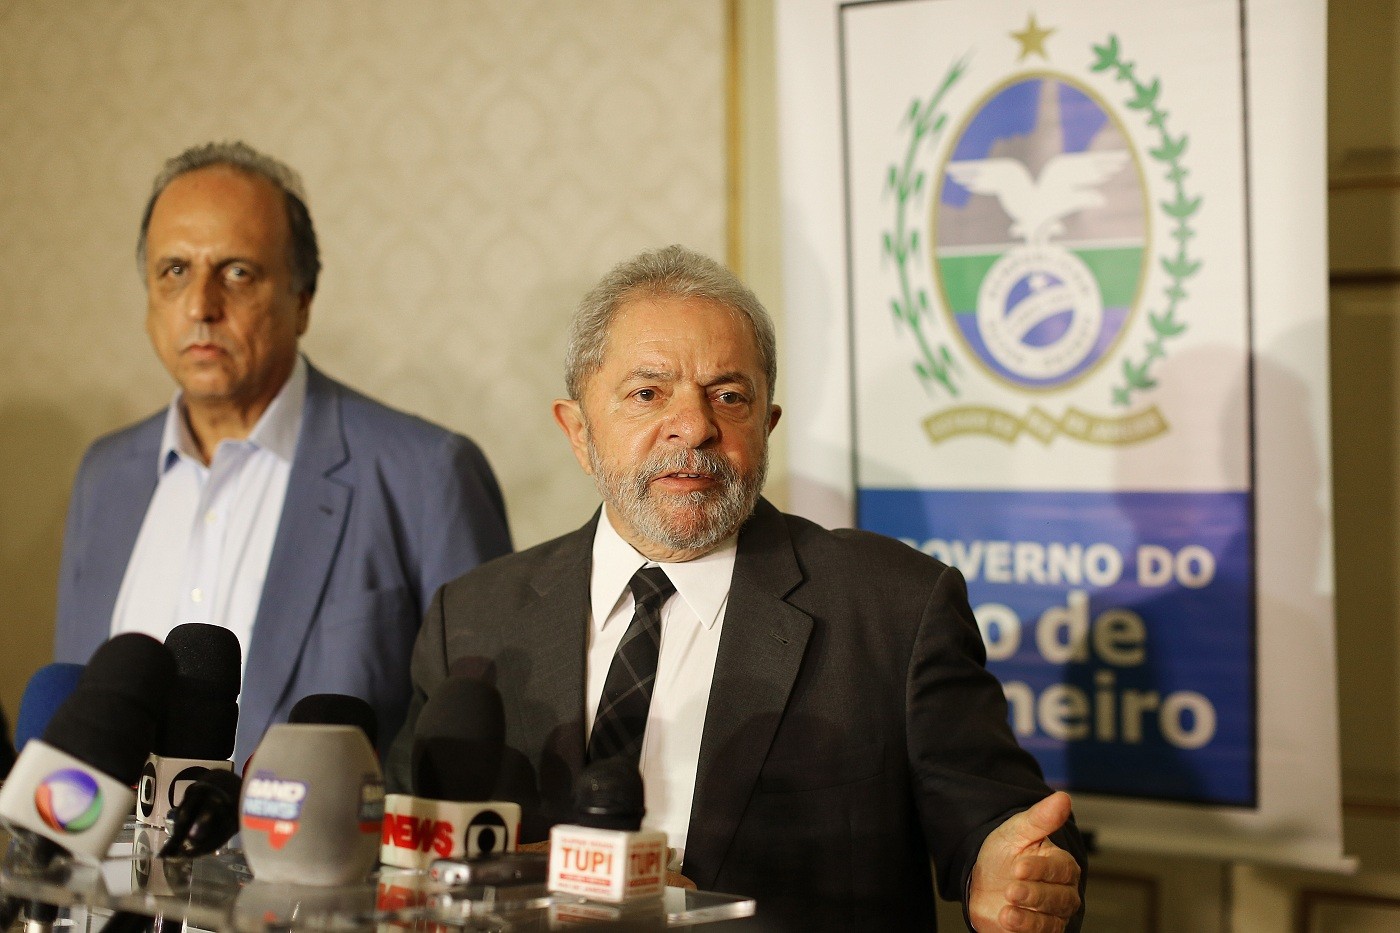  O ex-presidente Lula, durante coletiva de imprensa, após encontro com o governador do Rio de Janeiro, Luiz Fernando Pezão (Foto: Ricardo Stuckert/ Instituto Lula)